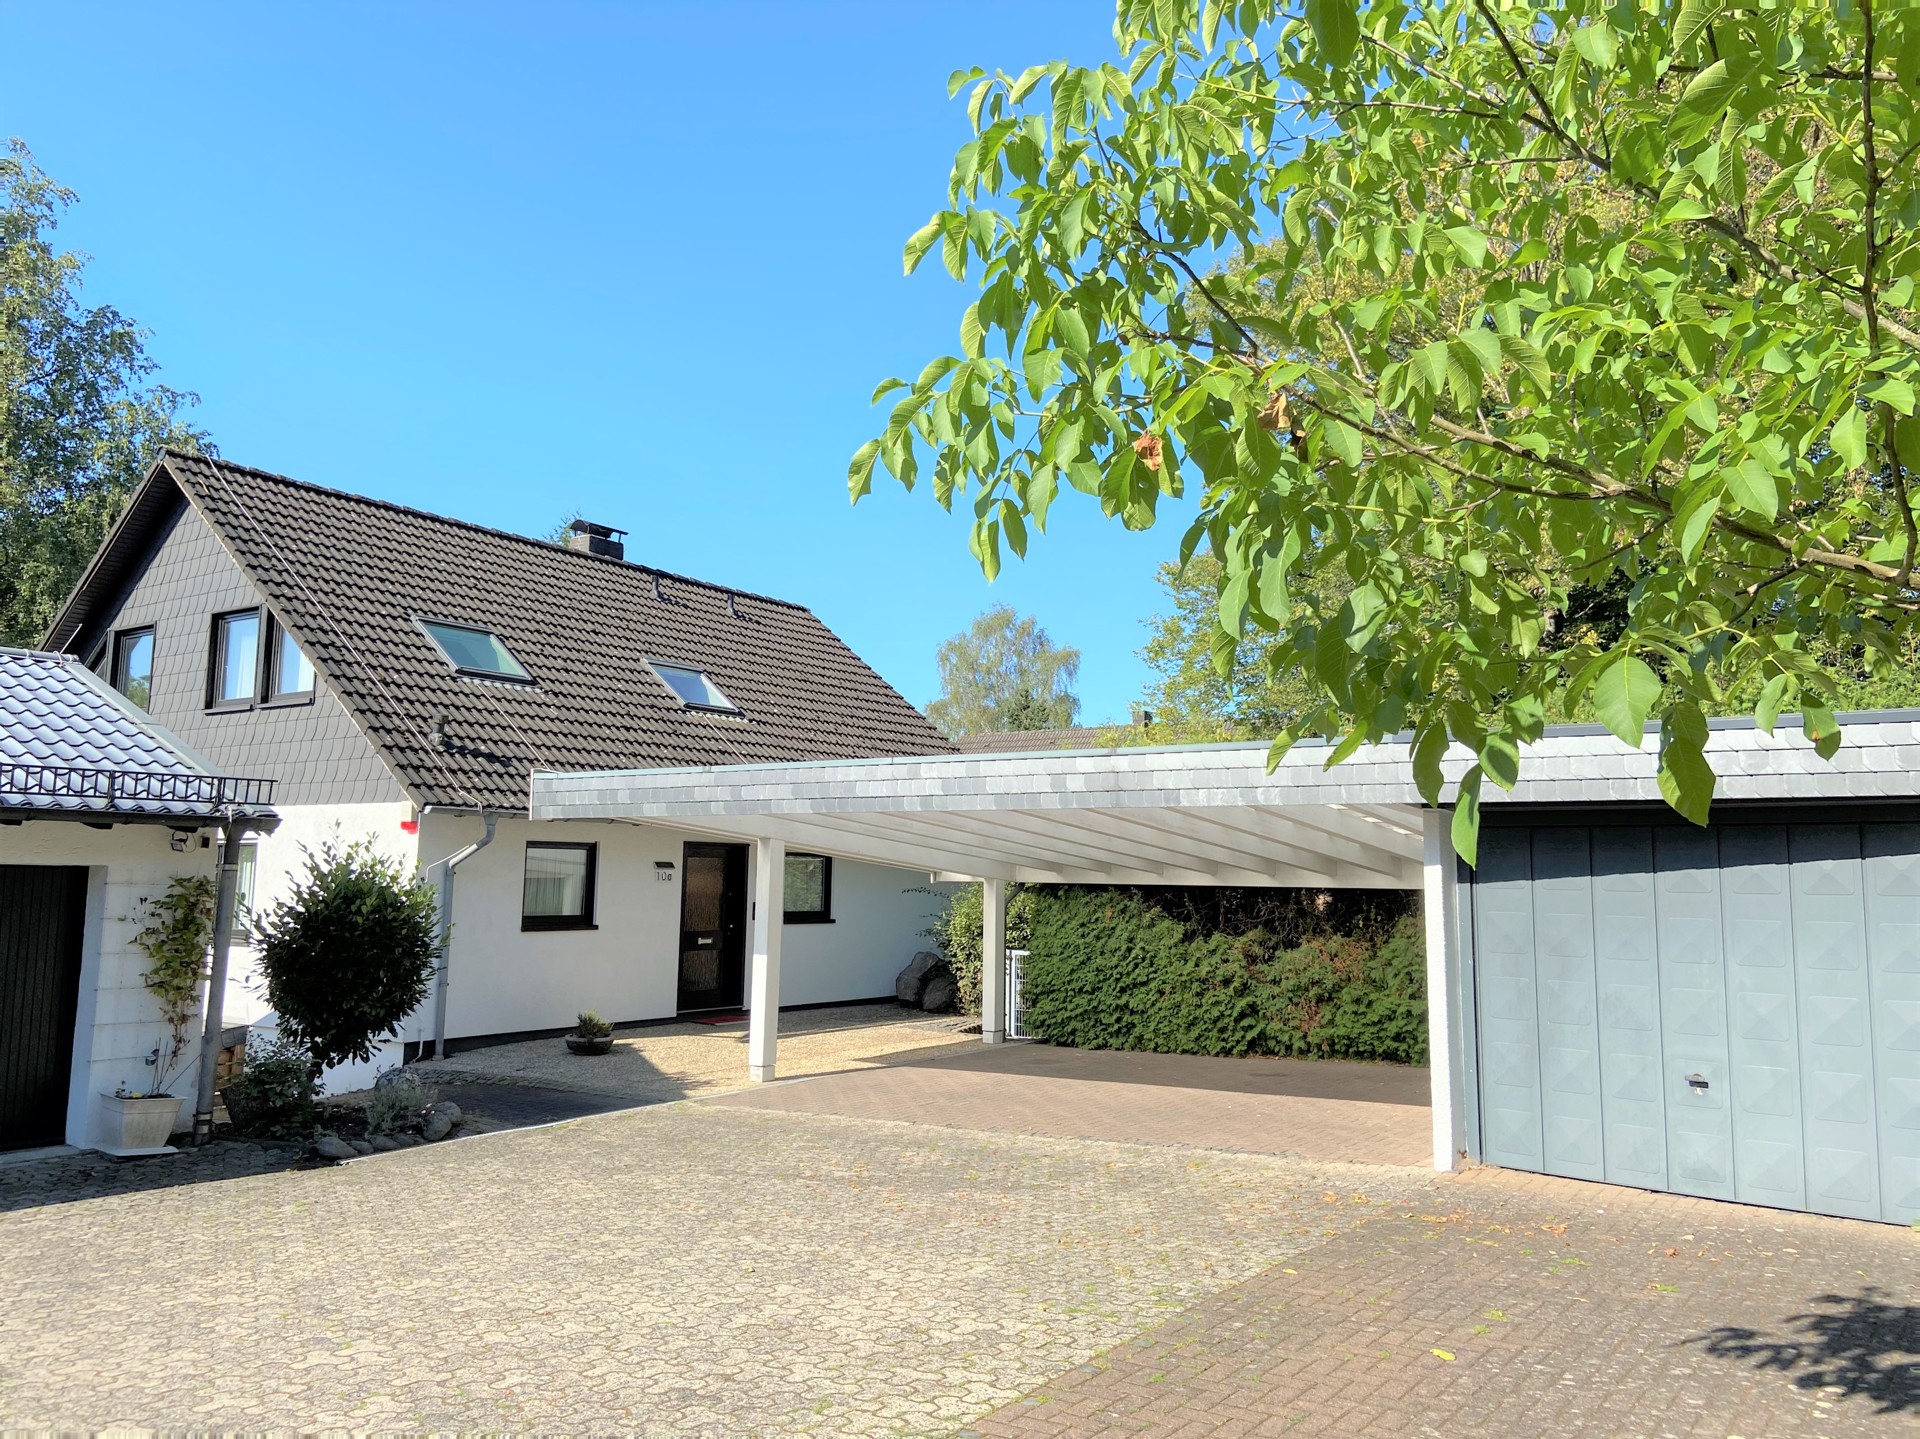 Multifunktionales & gepflegtes Einfamilienhaus in Hachenburg! Wohnen & Arbeiten unter einem Dach!